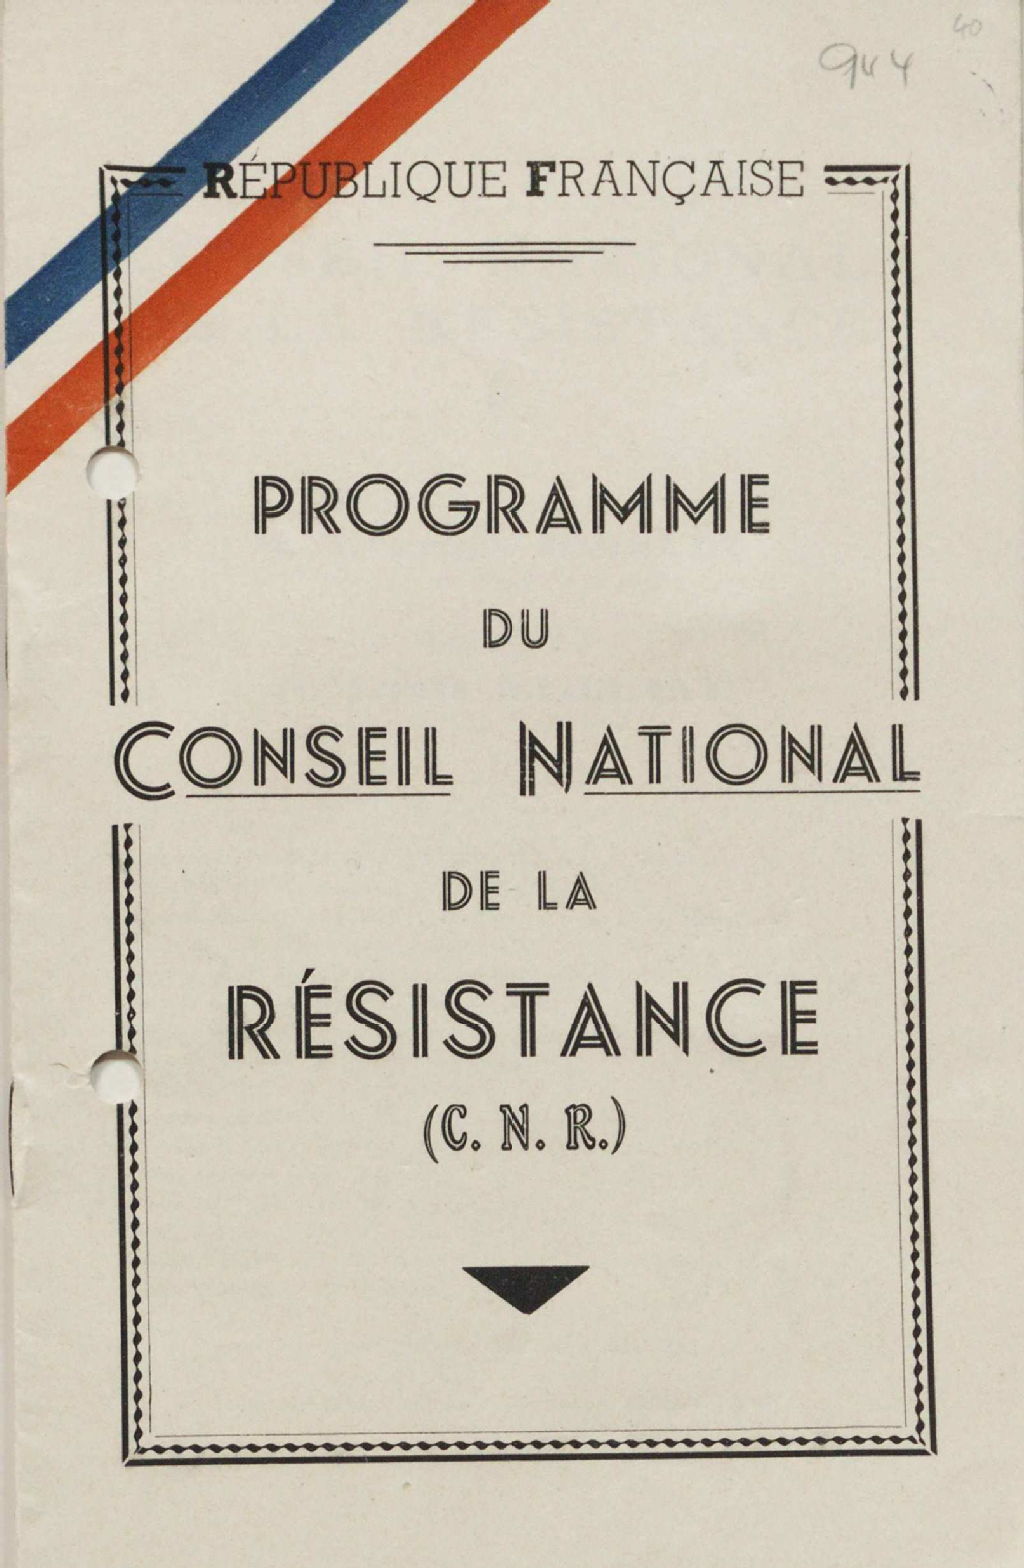 Programme du Conseil National de la Résistance (C.N.R.)